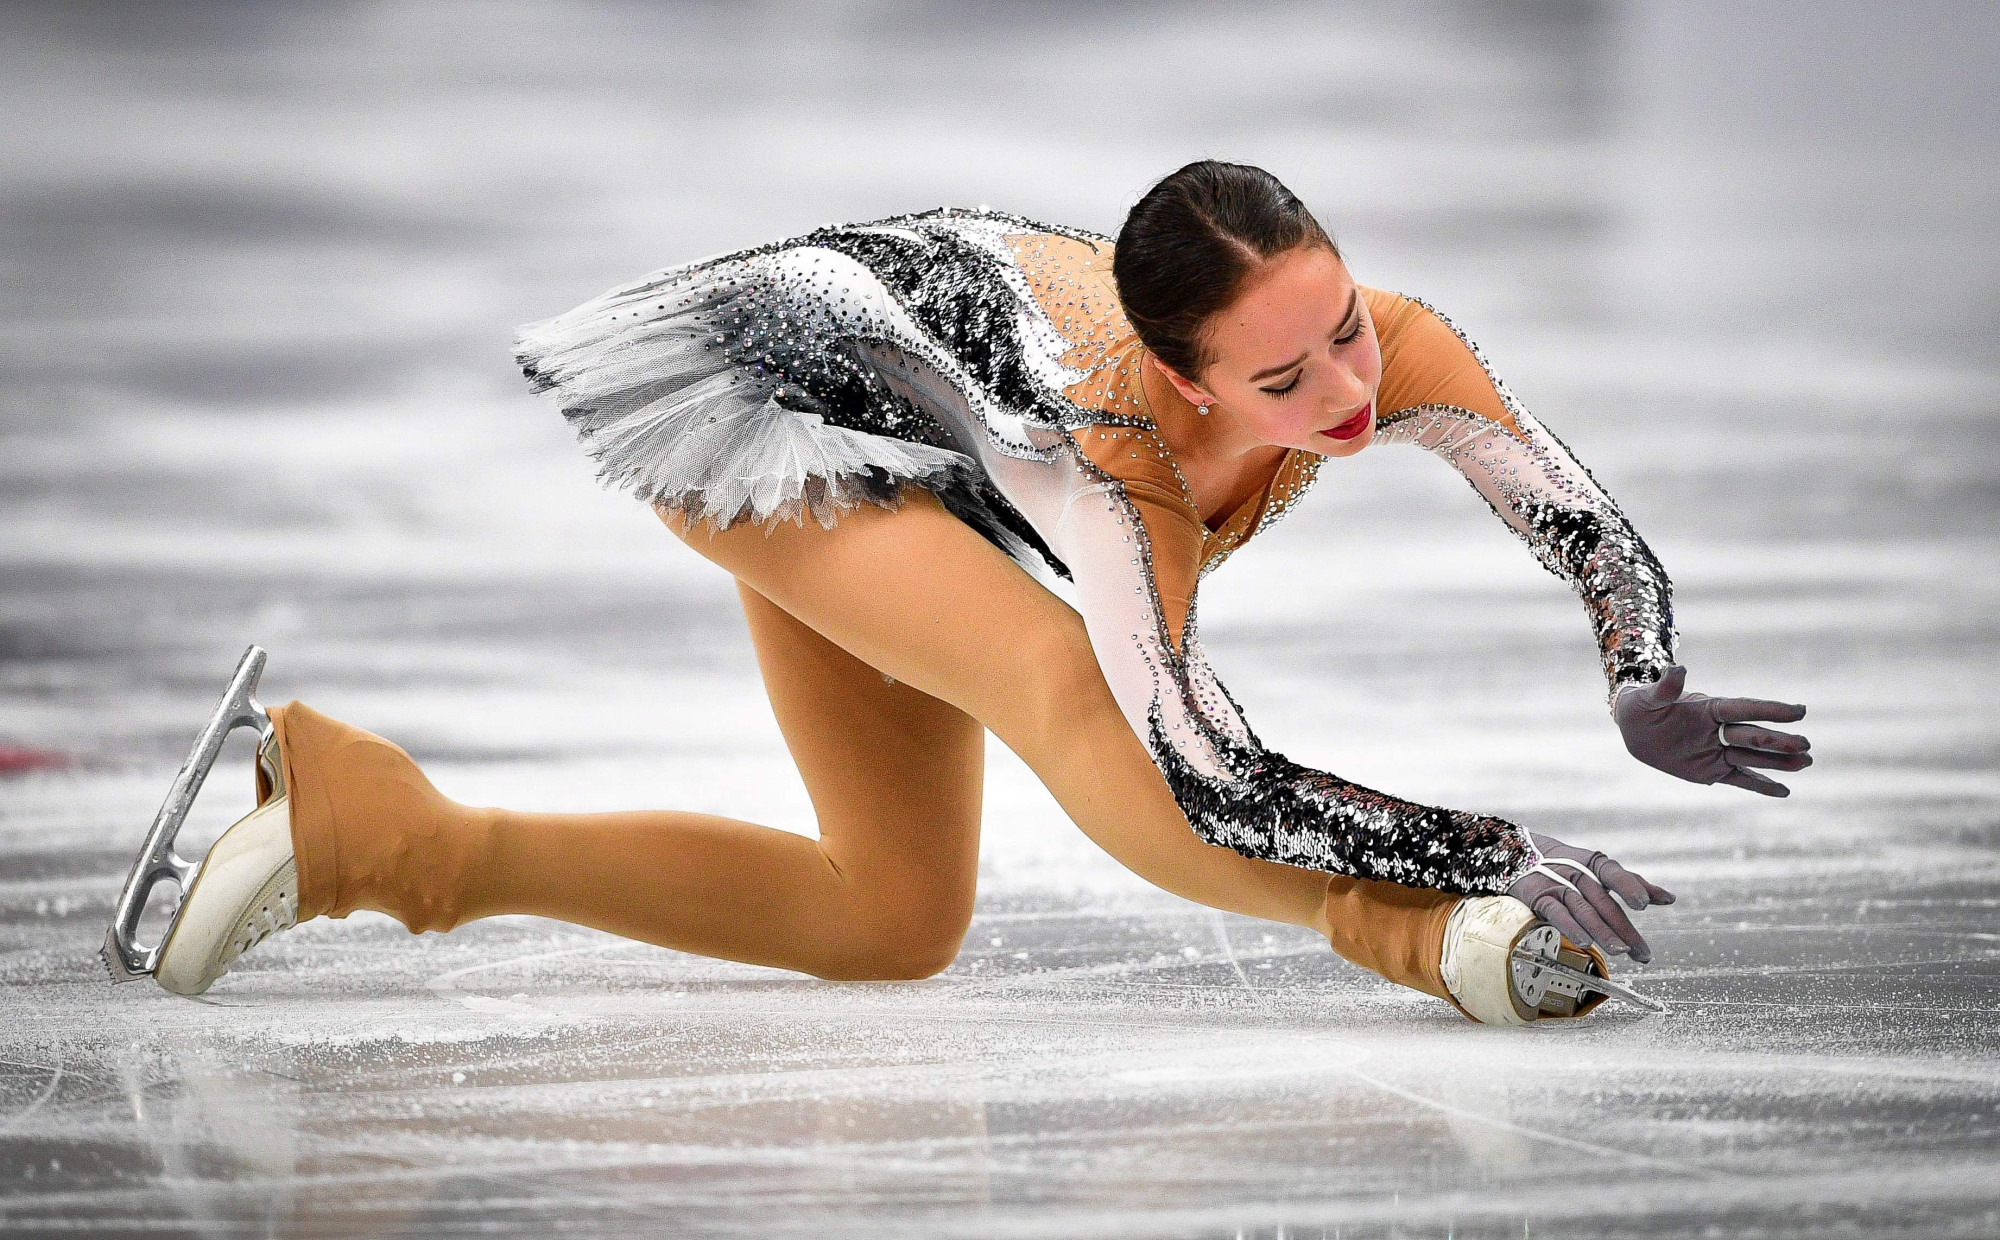 Nữ VĐV 15 tuổi đẹp tựa thiên thần, tỏa sáng rực rỡ trên sân băng Olympic